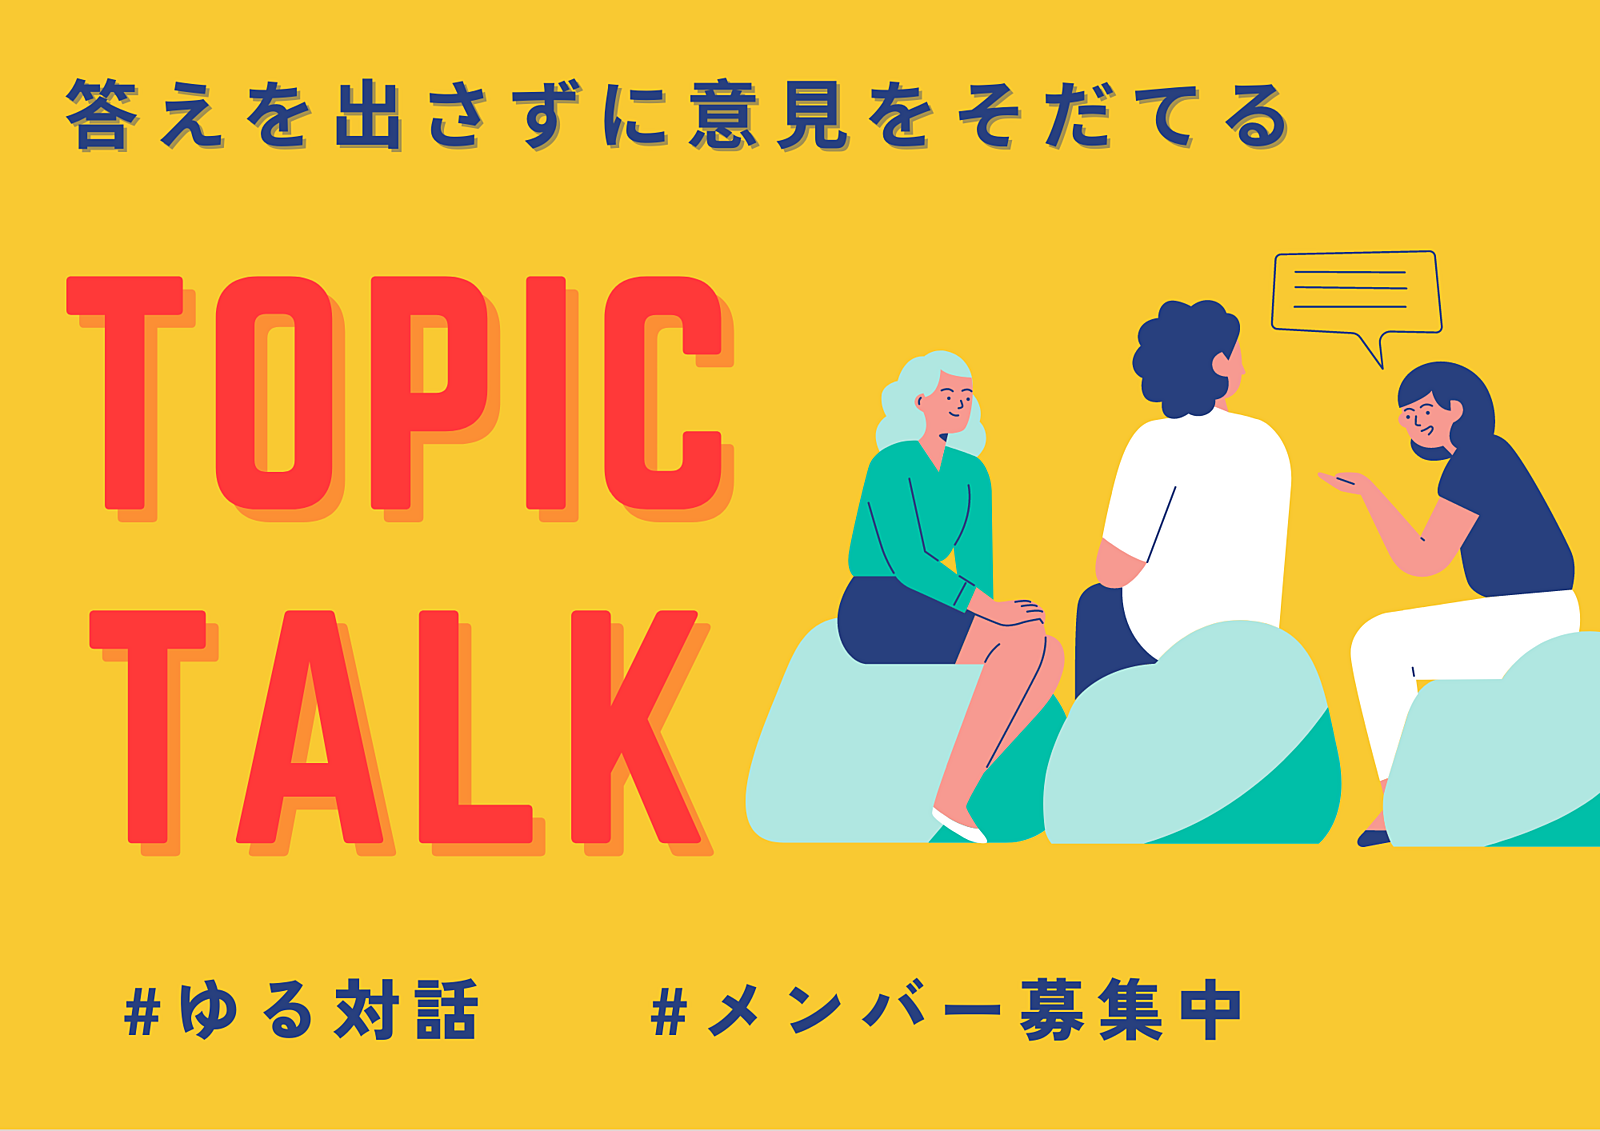 【10/1渋谷開催】それぞれの経験をシェアして正解のないトークを楽しもう。みんなで真剣に考える「そもそも」と当たり前を疑う時間。